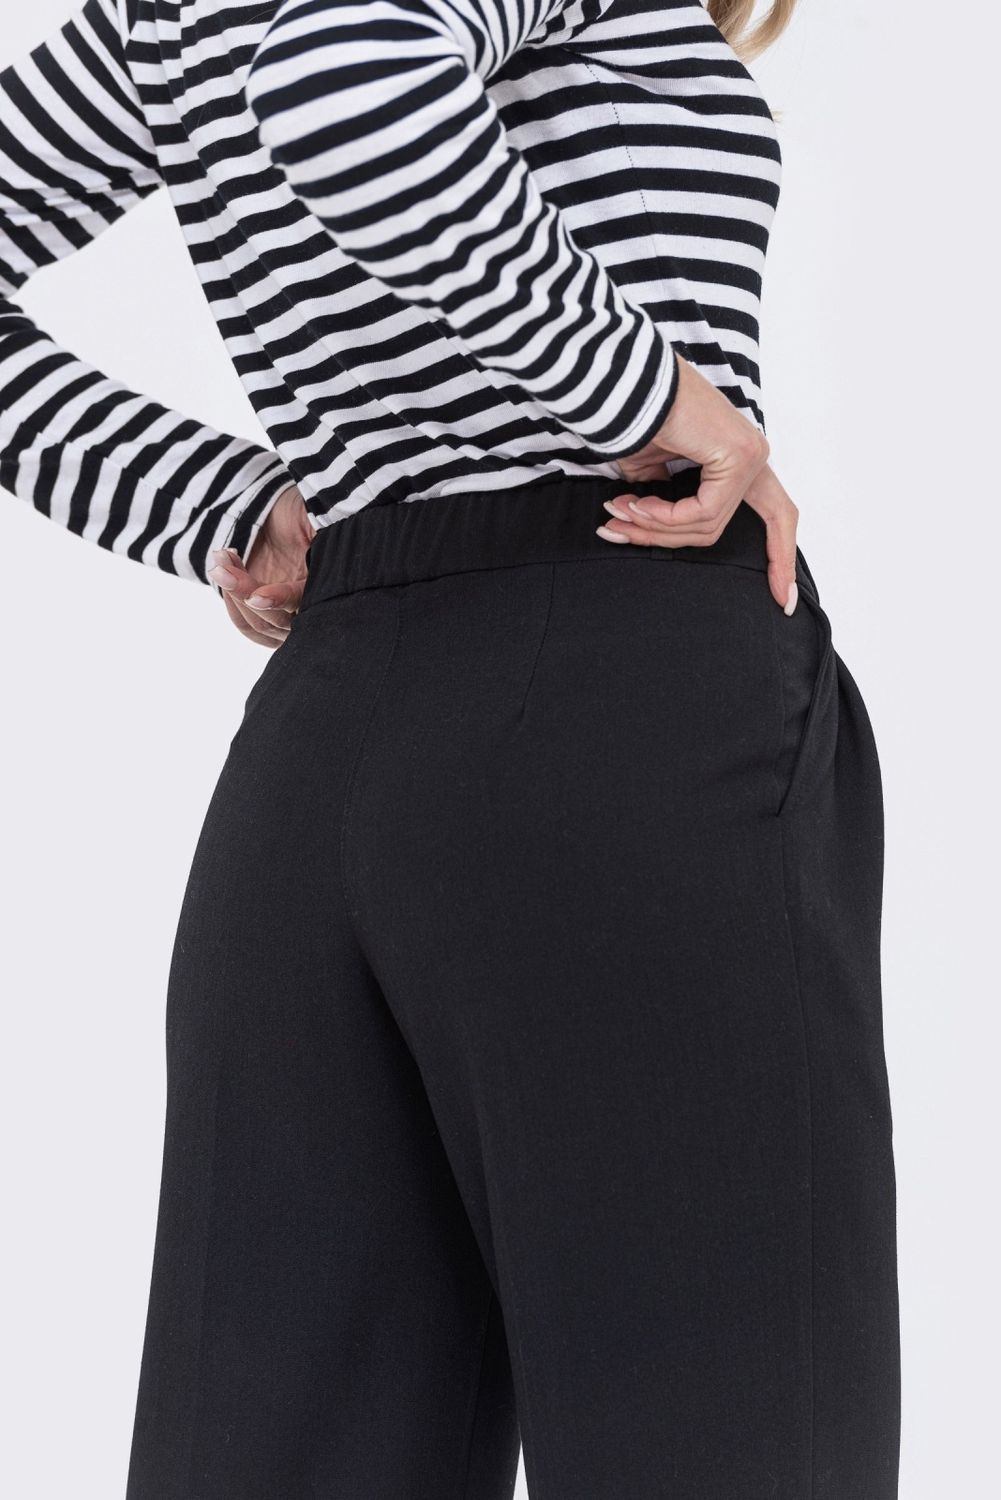 Классические женские брюки палаццо - фото